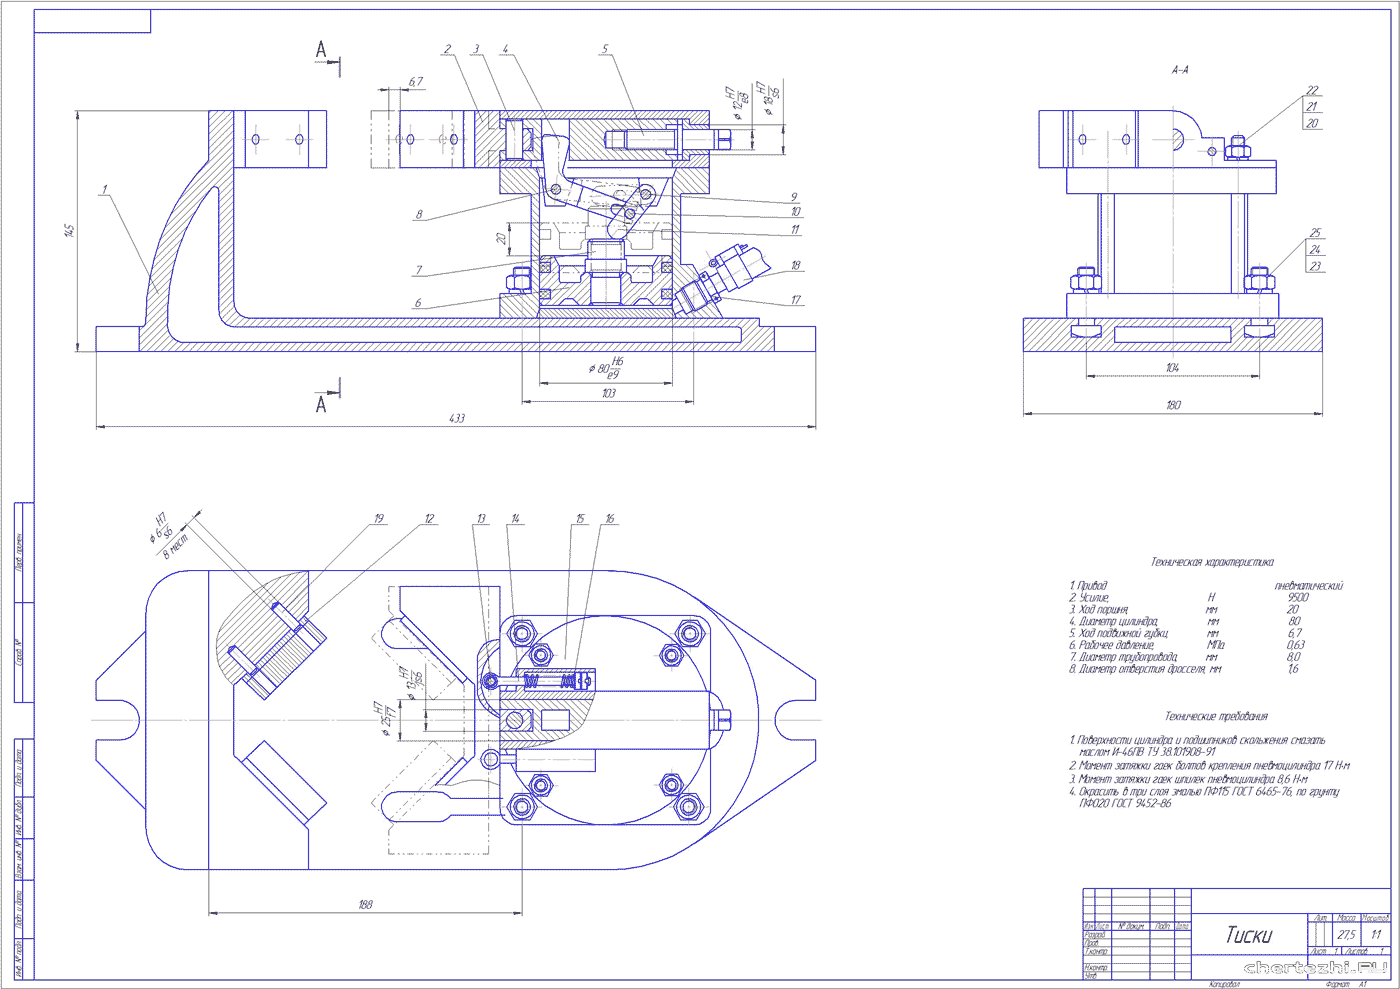 Курсовая работа (колледж) - Разработка технологического процесса ремонта  колёсного цилиндра переднего тормоза автомобиля ГАЗ 53